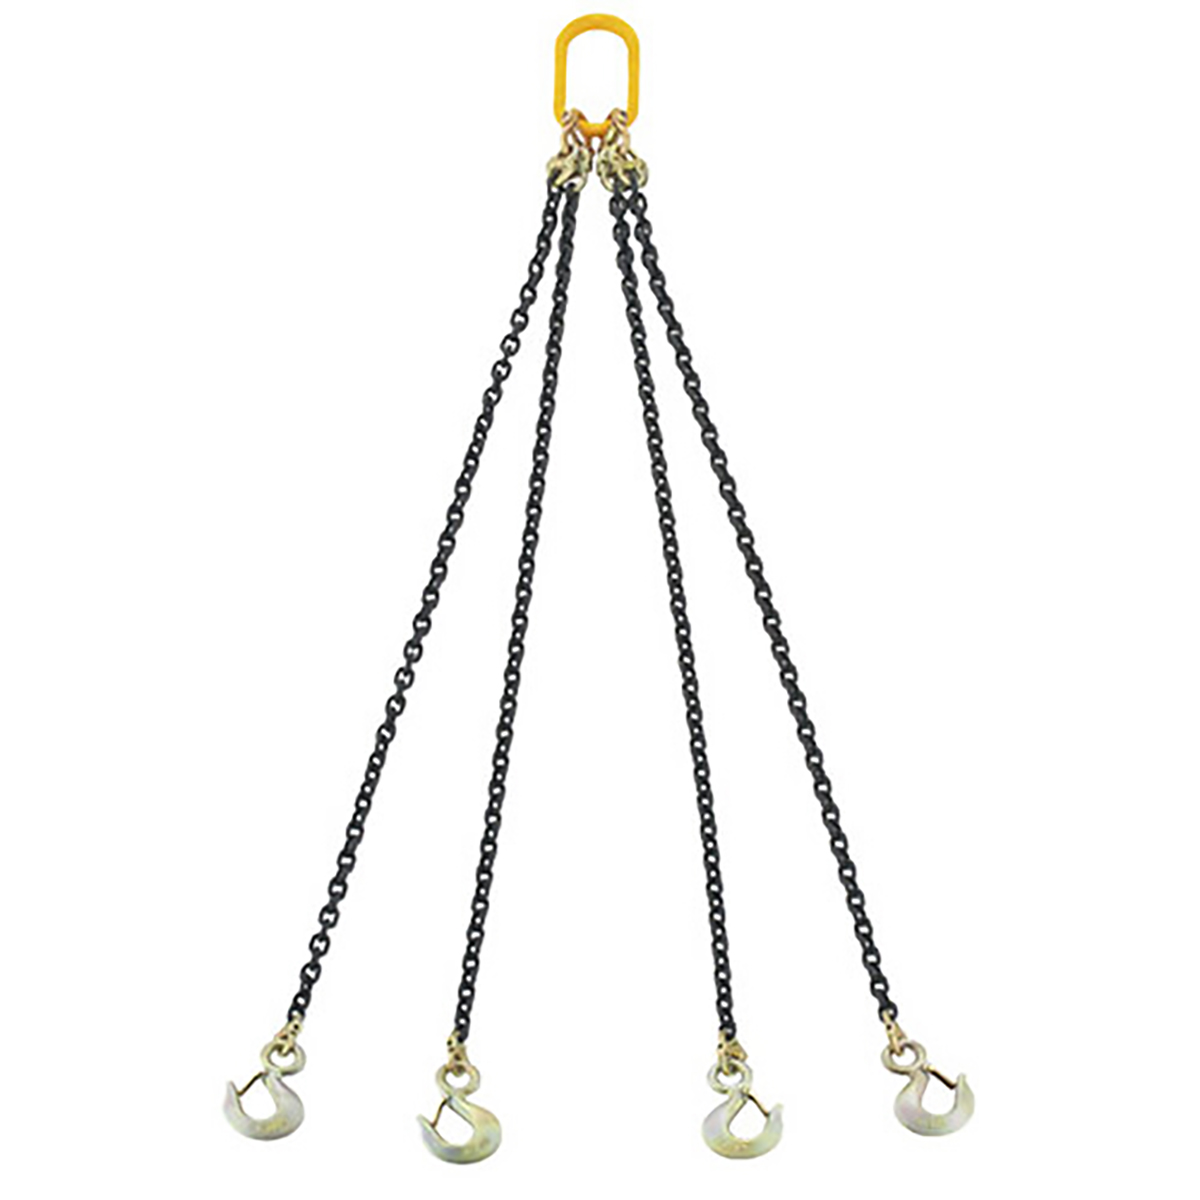 スリングチェーン 3t 4本吊り 耐荷重3t 吊りクランプ 吊りベルト 1567